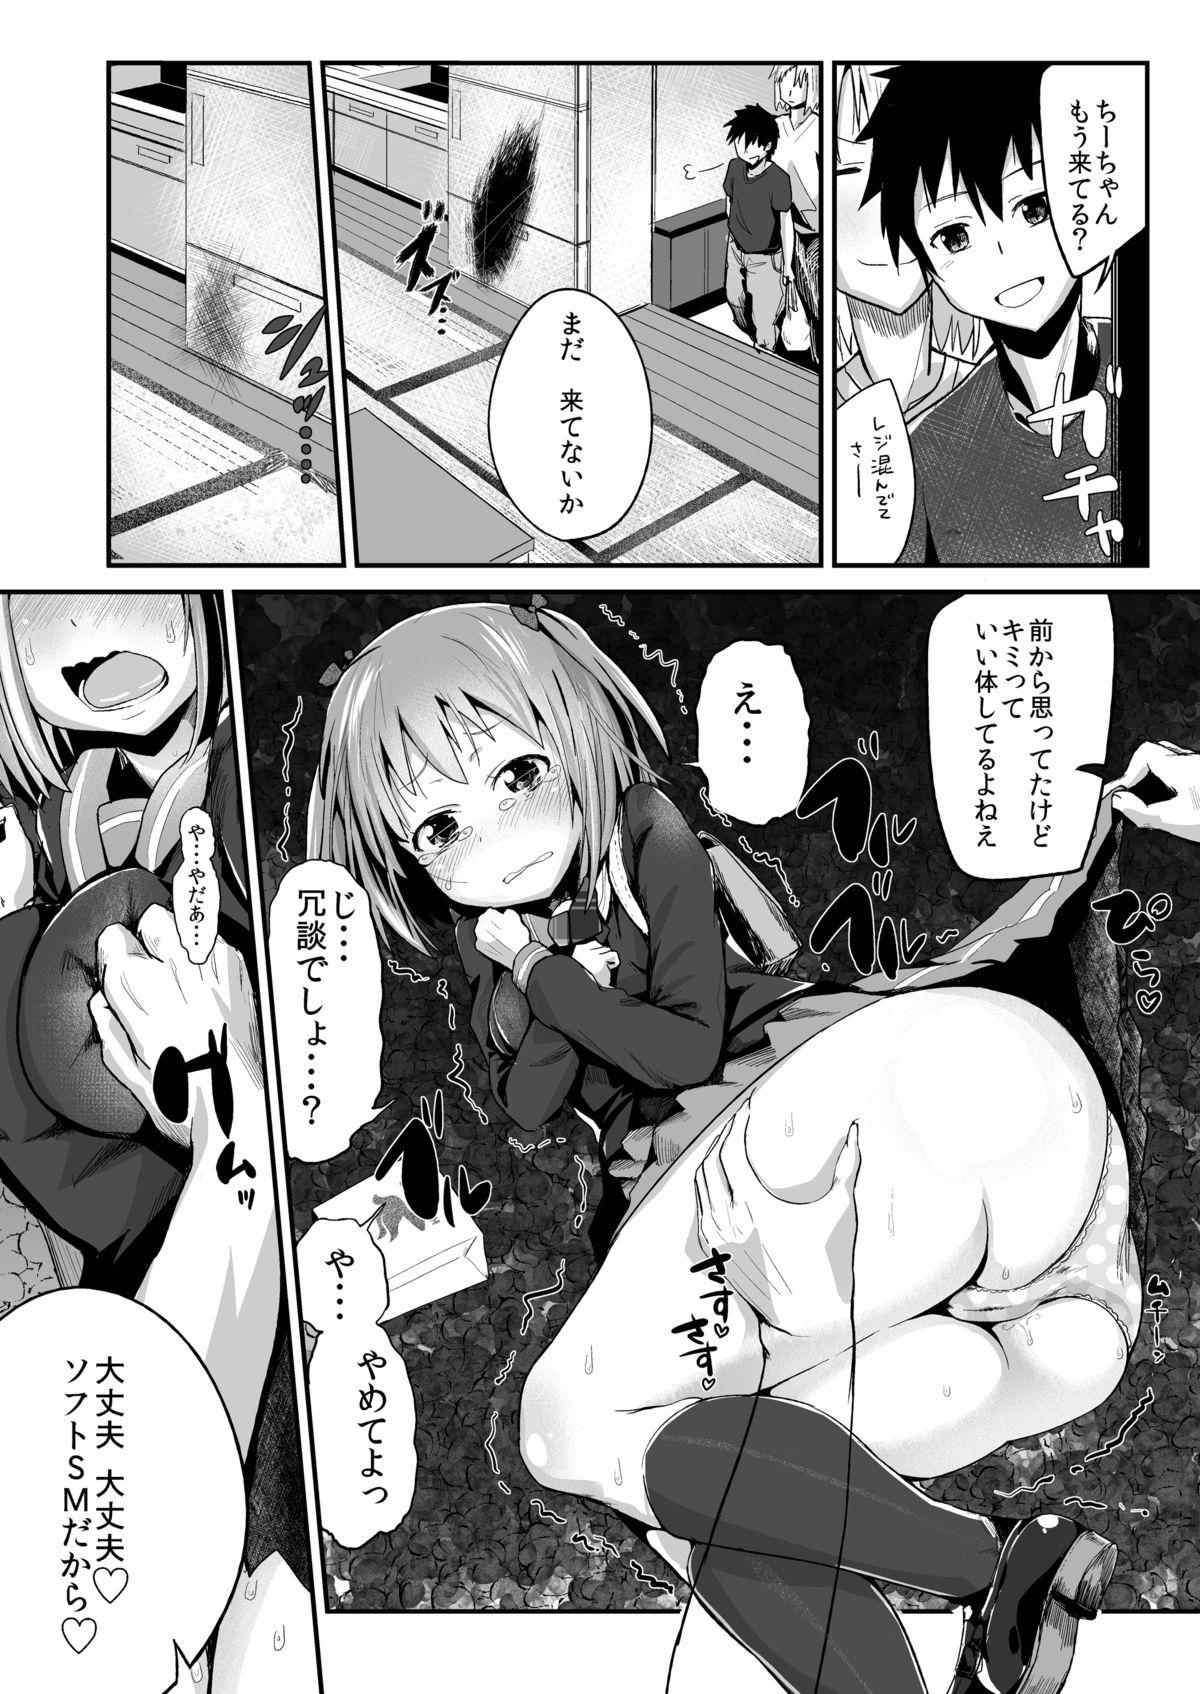 Eating Chi-chan, Ochiru - Hataraku maou sama Boobs - Page 7